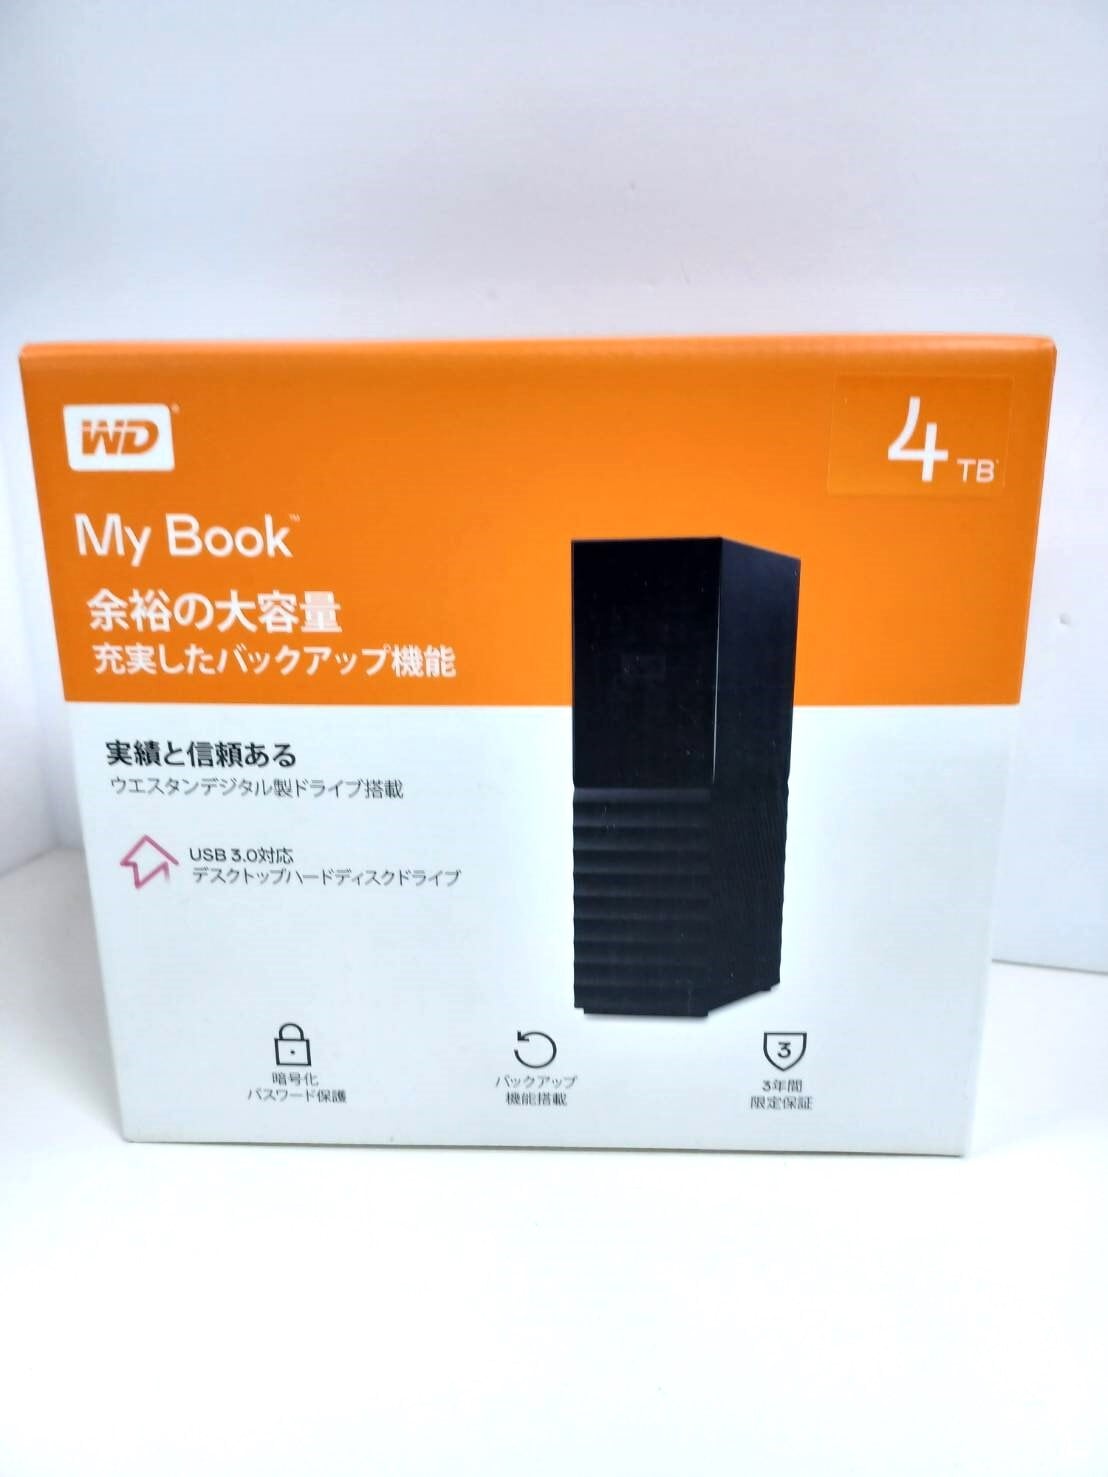 【新品未開封品】My Book デスクトップハードディスクドライブPC周辺機器